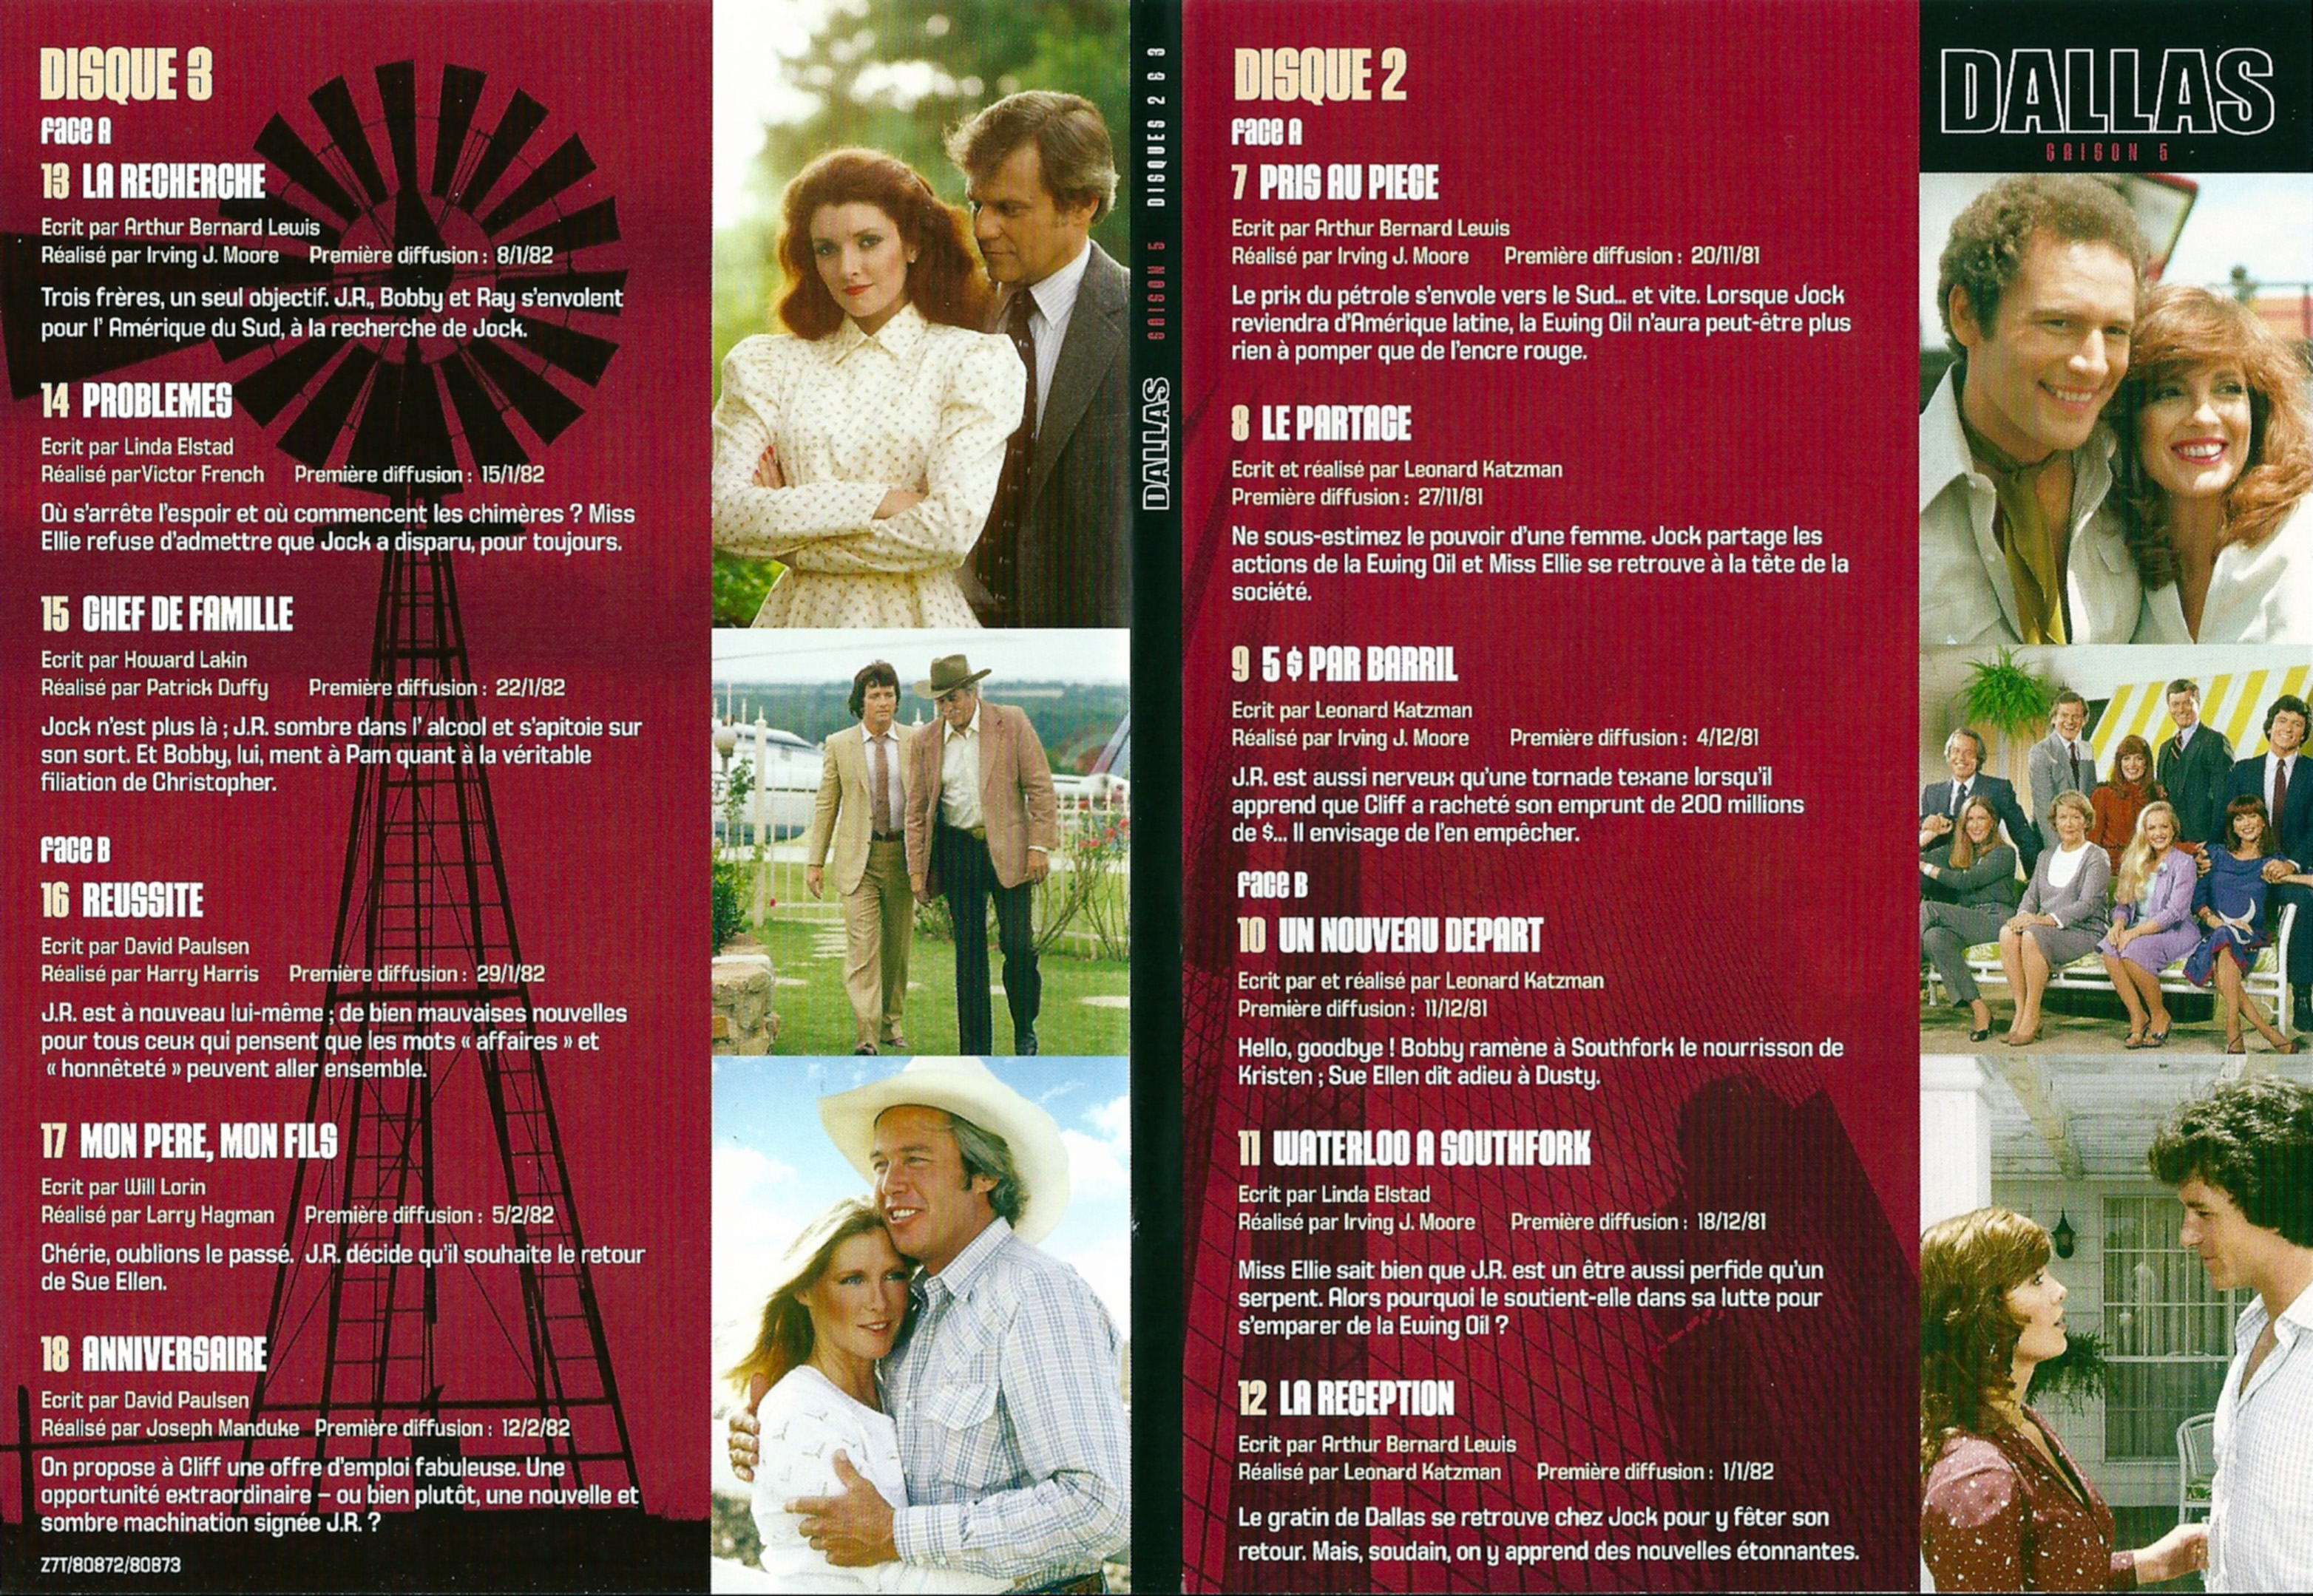 Jaquette DVD Dallas Saison 5 DVD 2 et 3